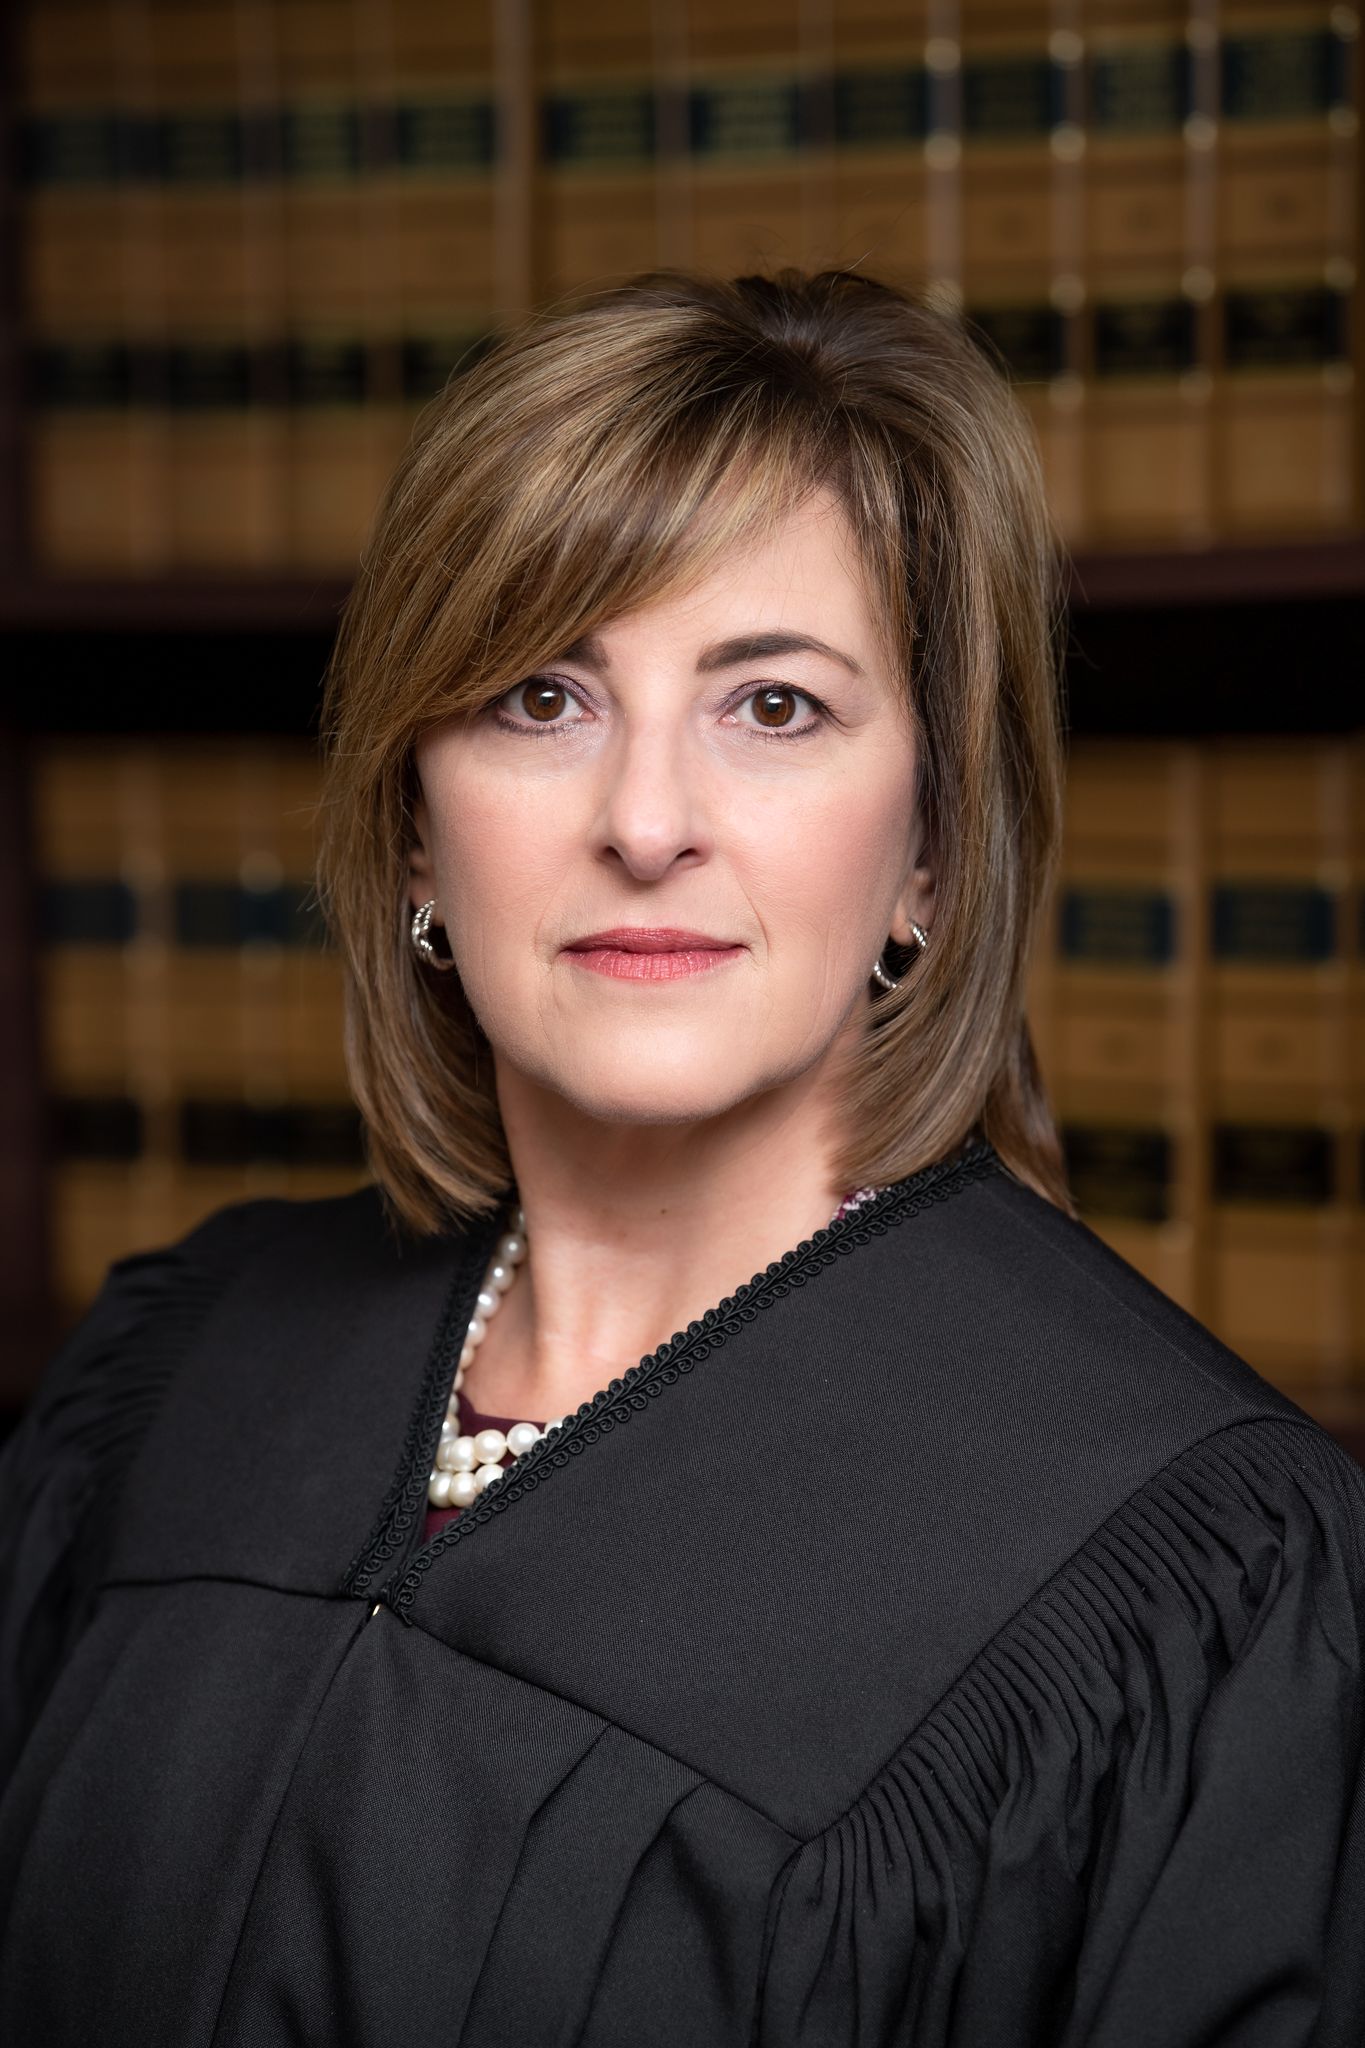 Judge Connie L Williford